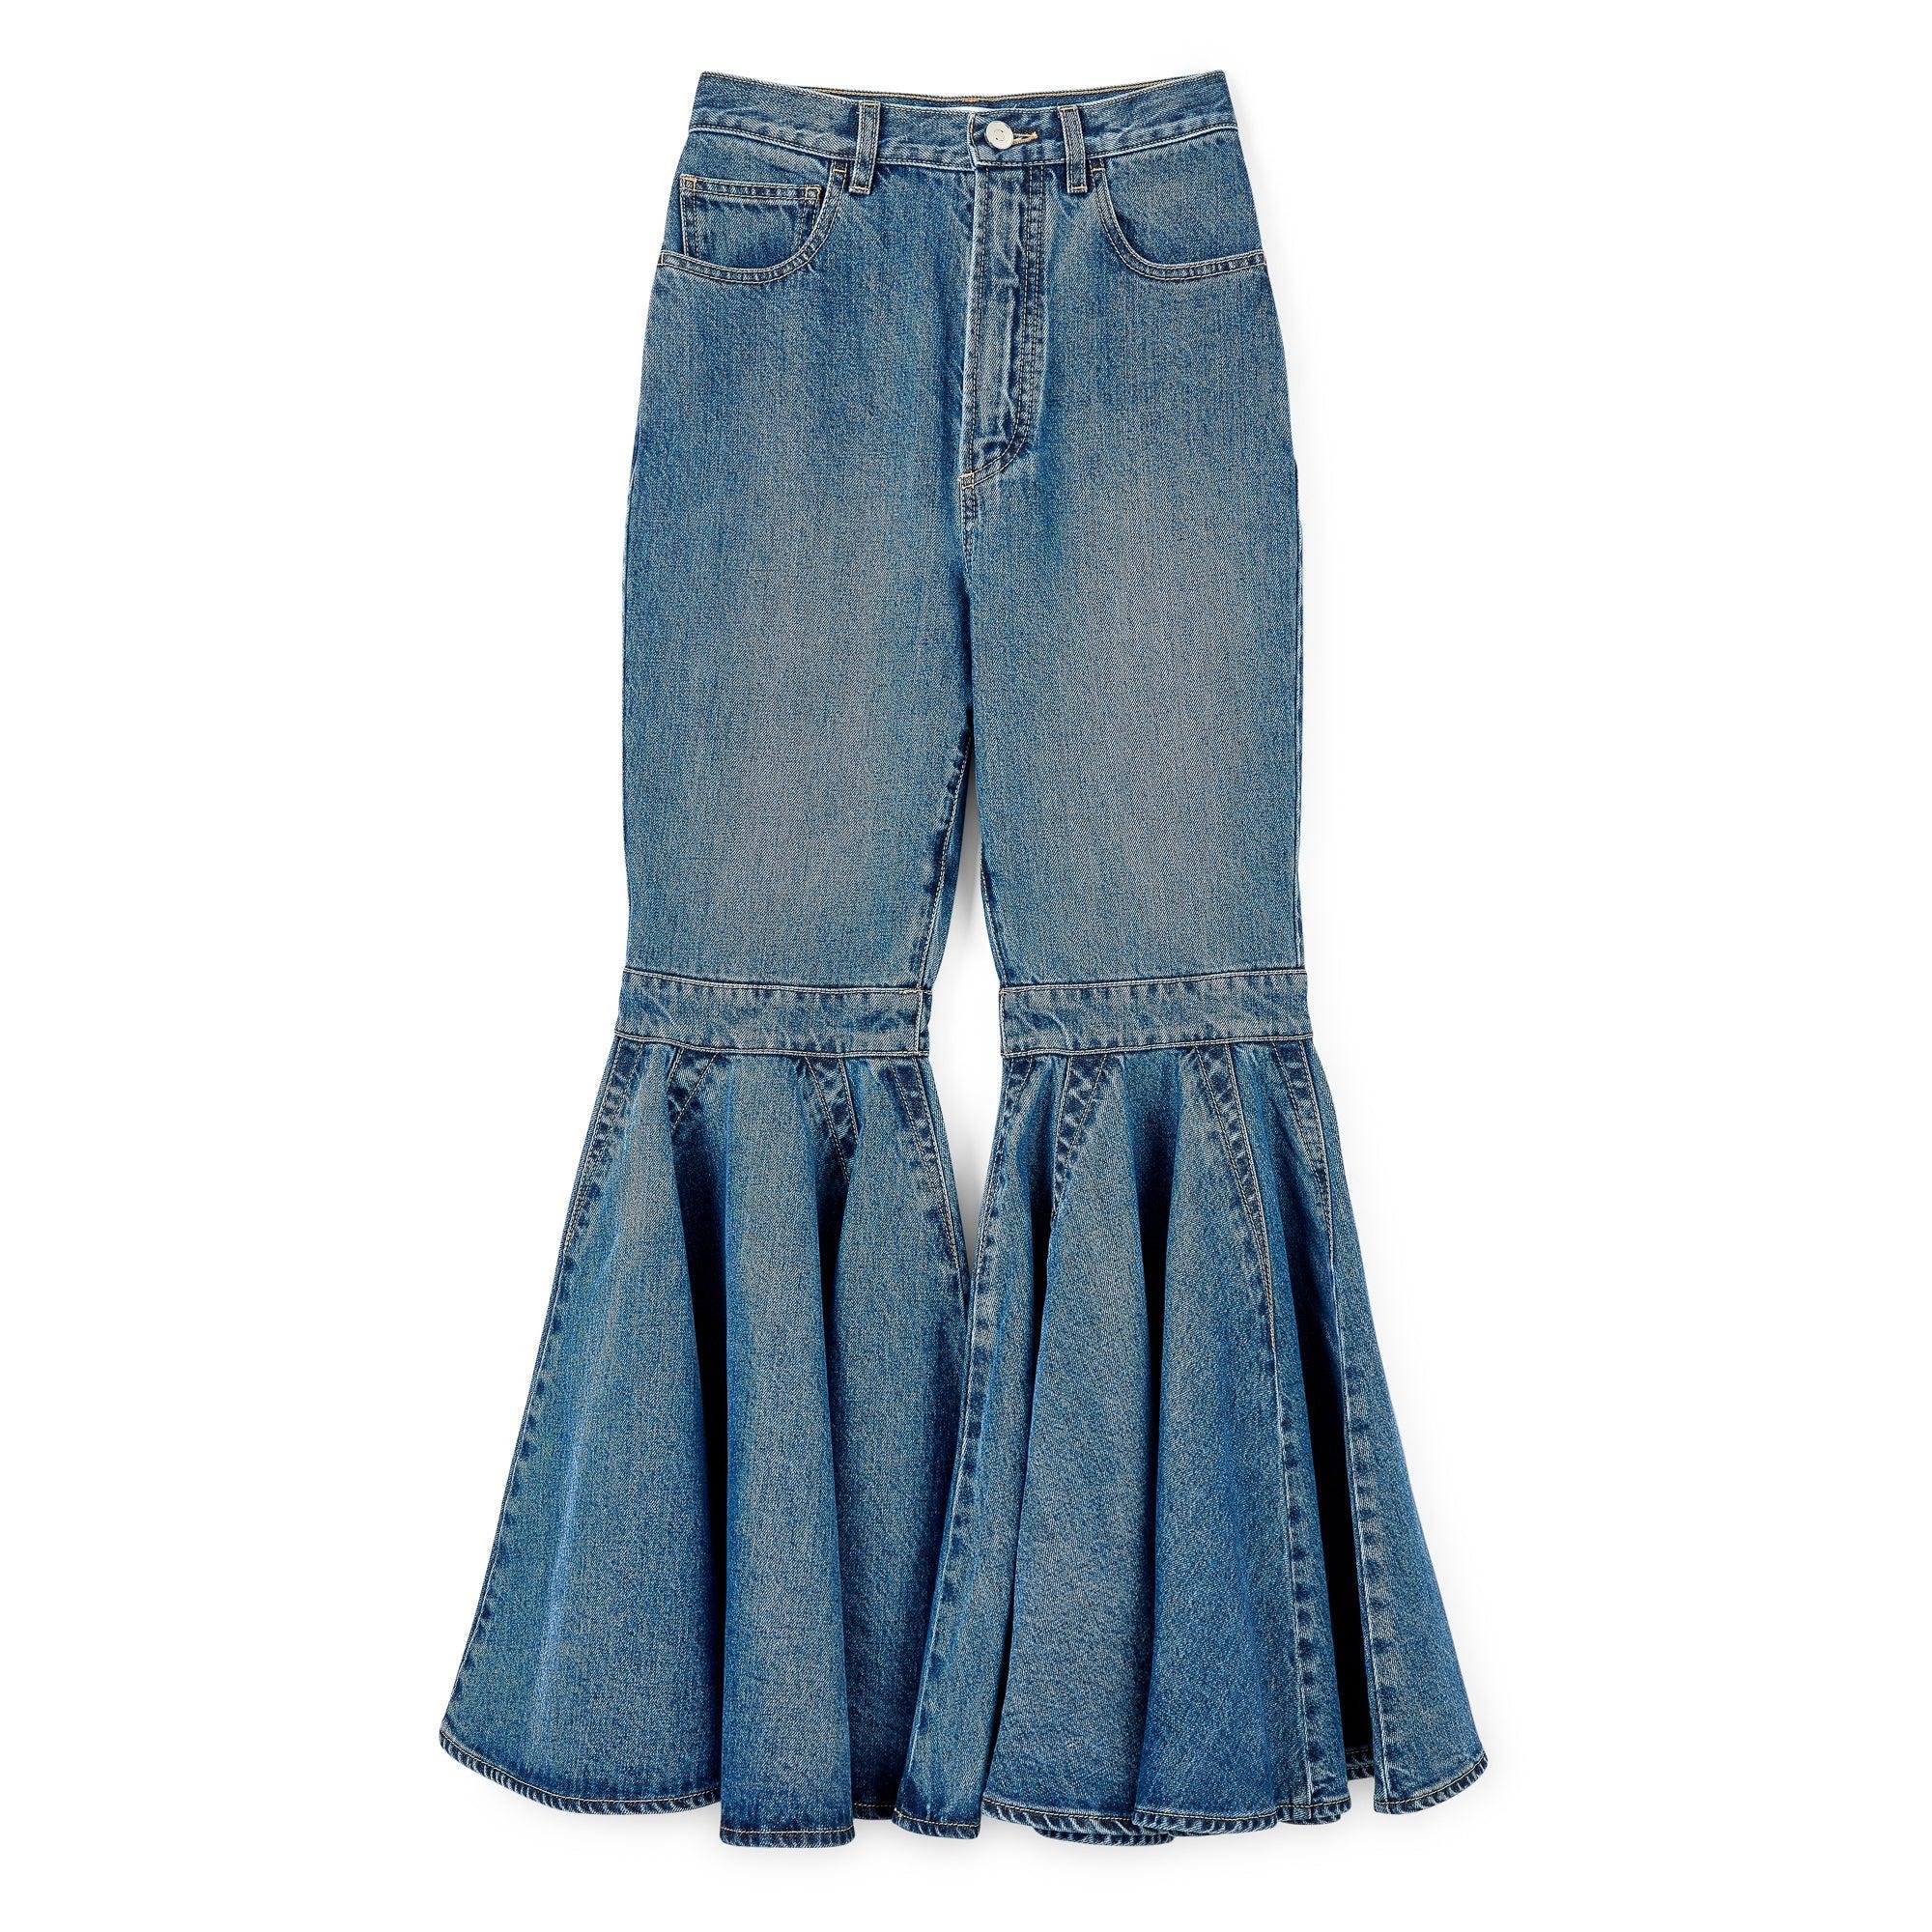 Alaia Women's Crinoline Jeans (Denim) by AZZEDINE ALAIA